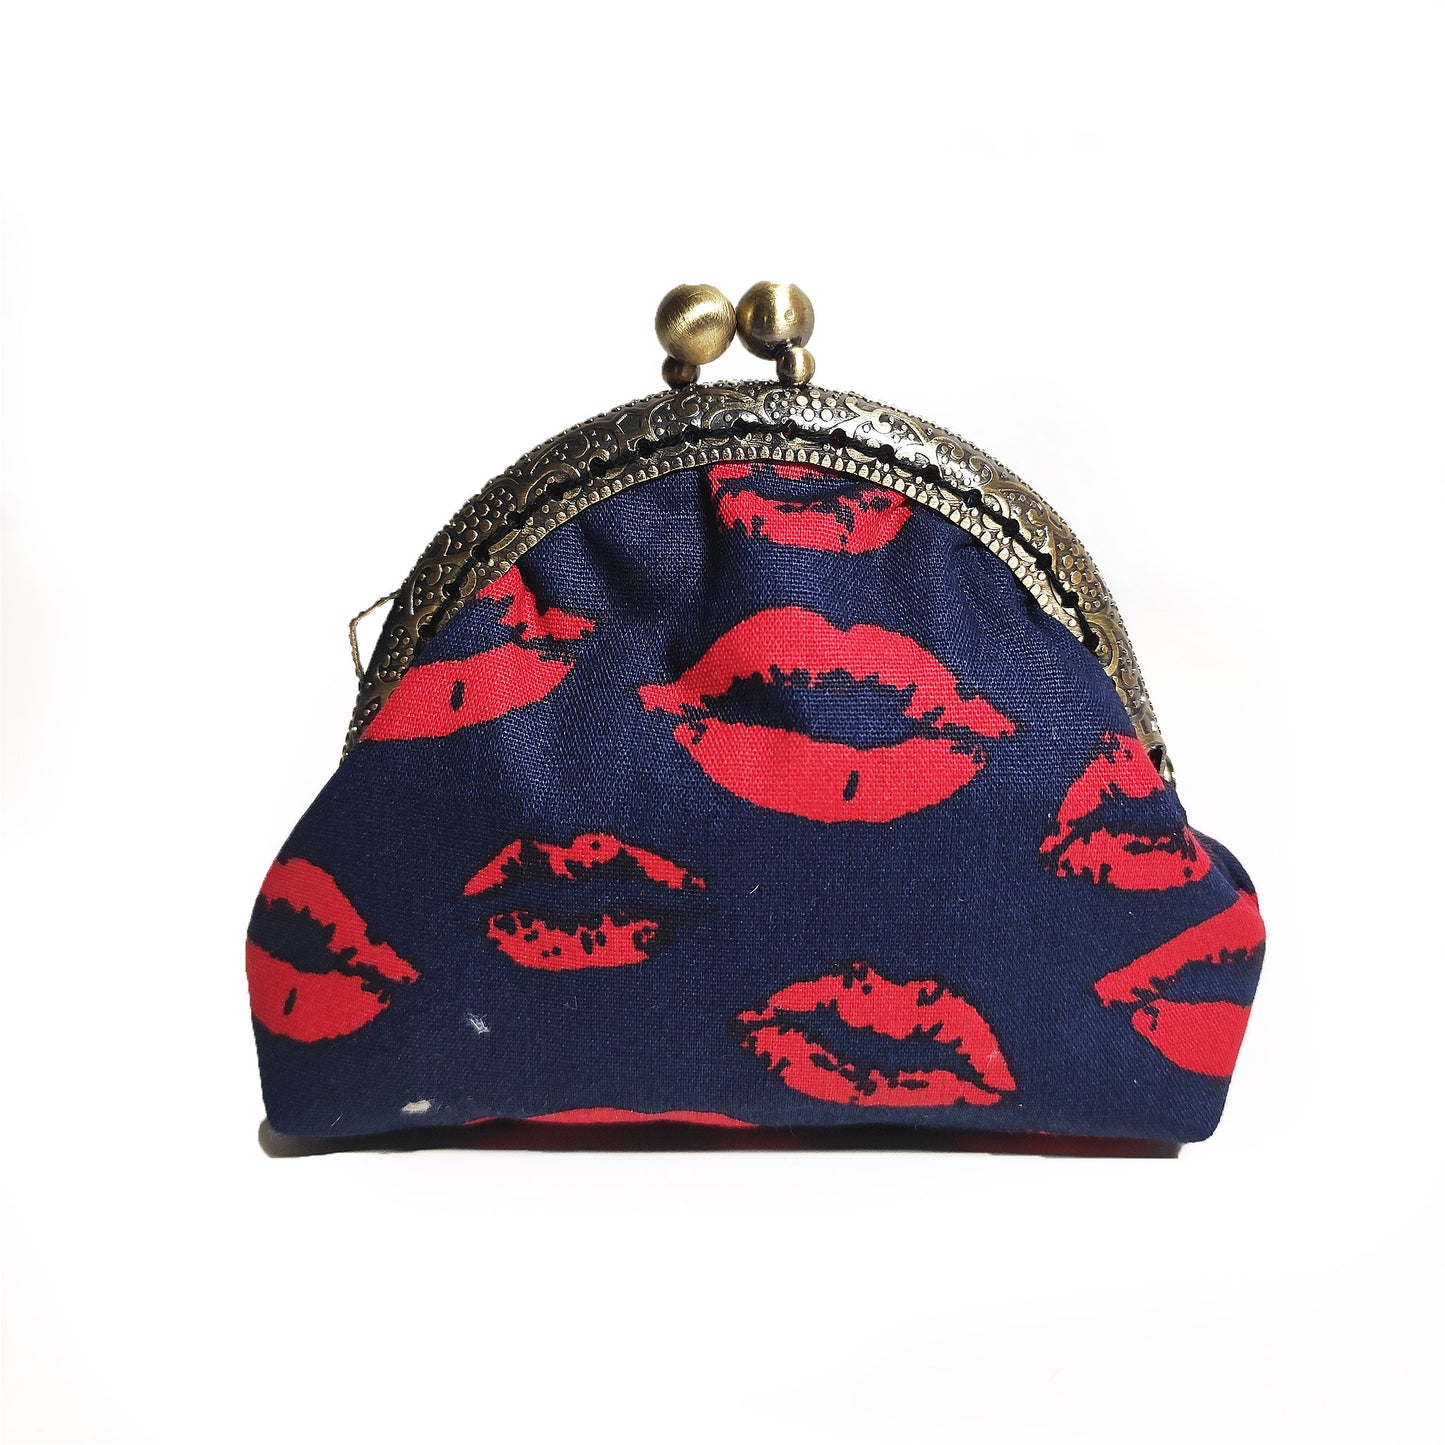 Geldbörse in dunkel blau mit bedruckten roten Lippen drauf. Sie schließt mit einen  Bronzefarbenen Kuss-Verschluss welcher mit mit nostalgischen Vintage-Schnitzereien verziert ist. 